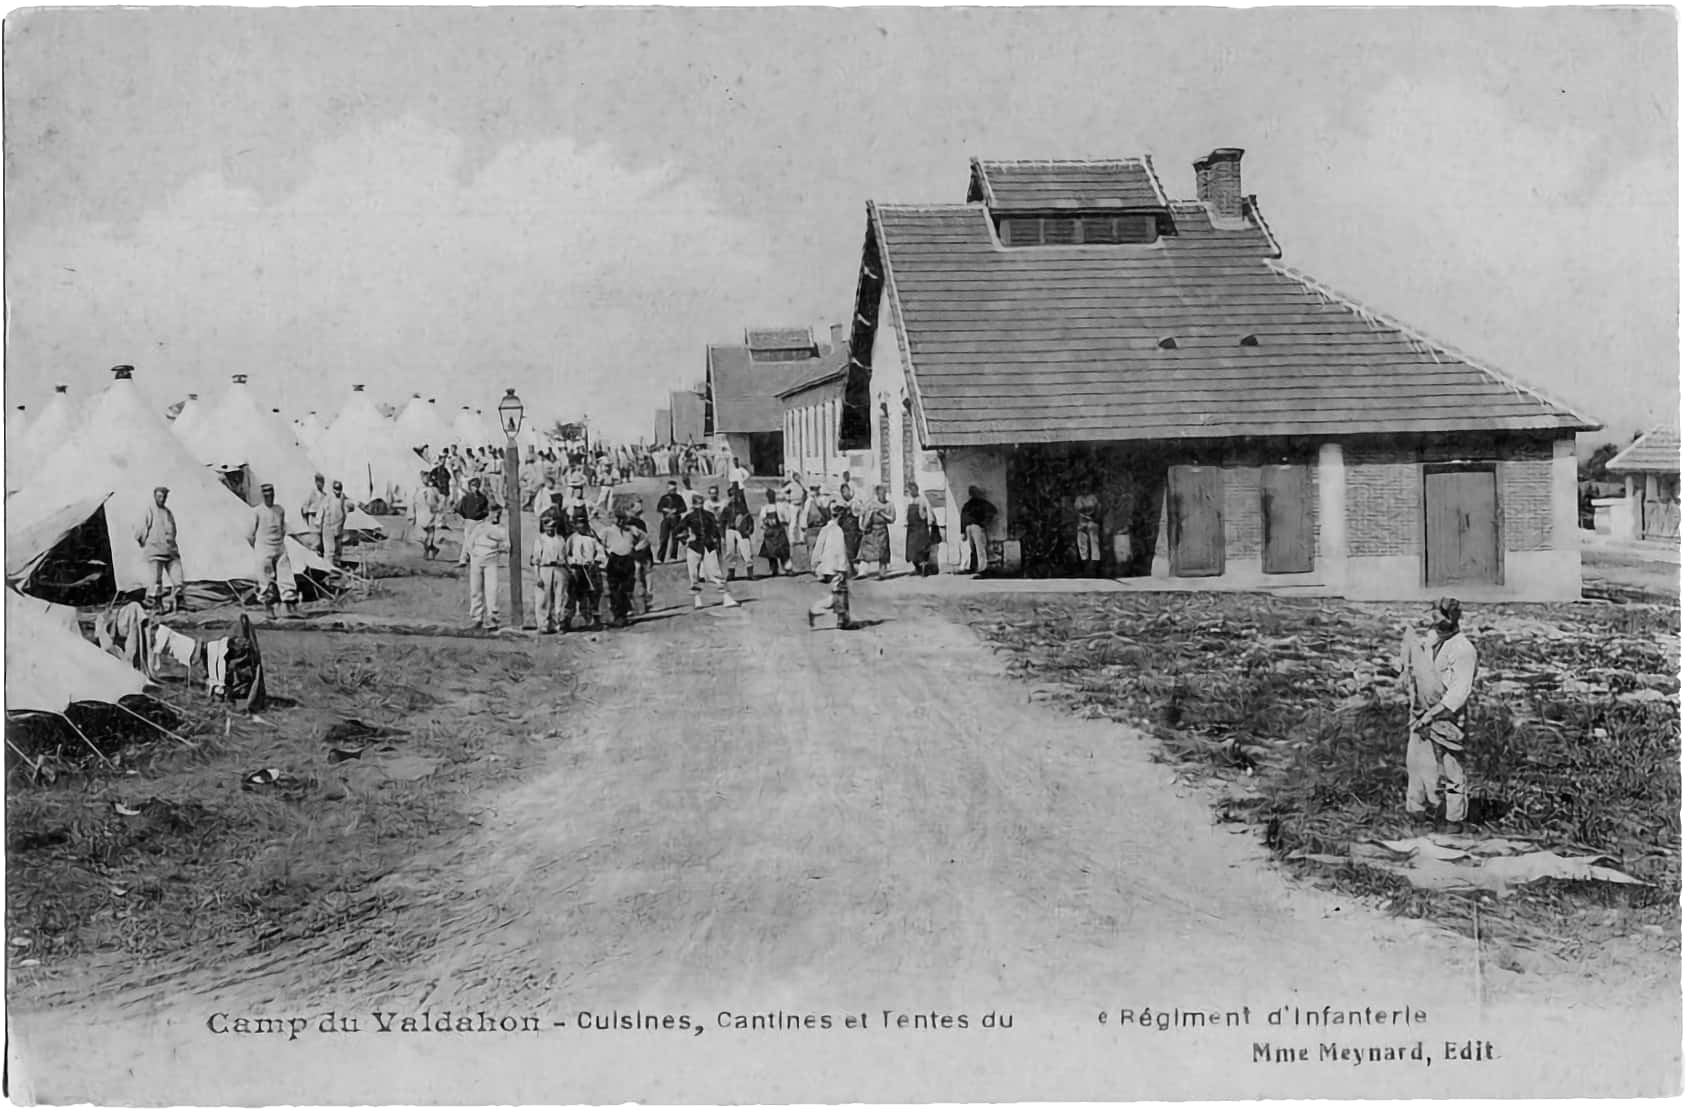 Ligne Maginot - VALDAHON - (Camp de sureté) - Les cuisines
Carte postale